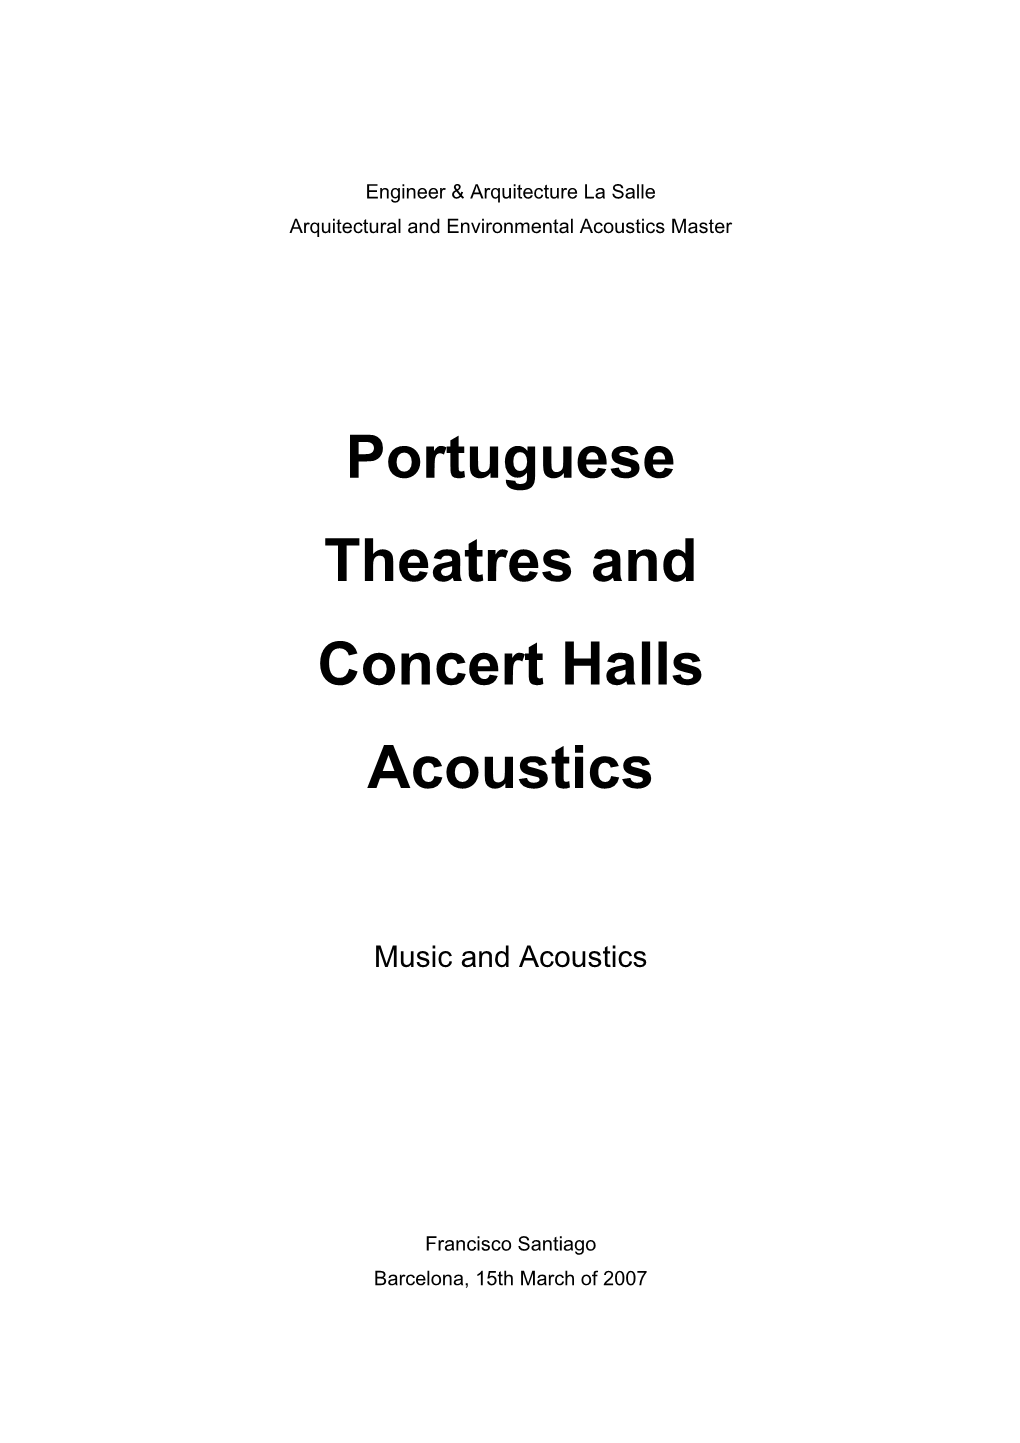 Portuguese Theatres and Concert Halls Acoustics